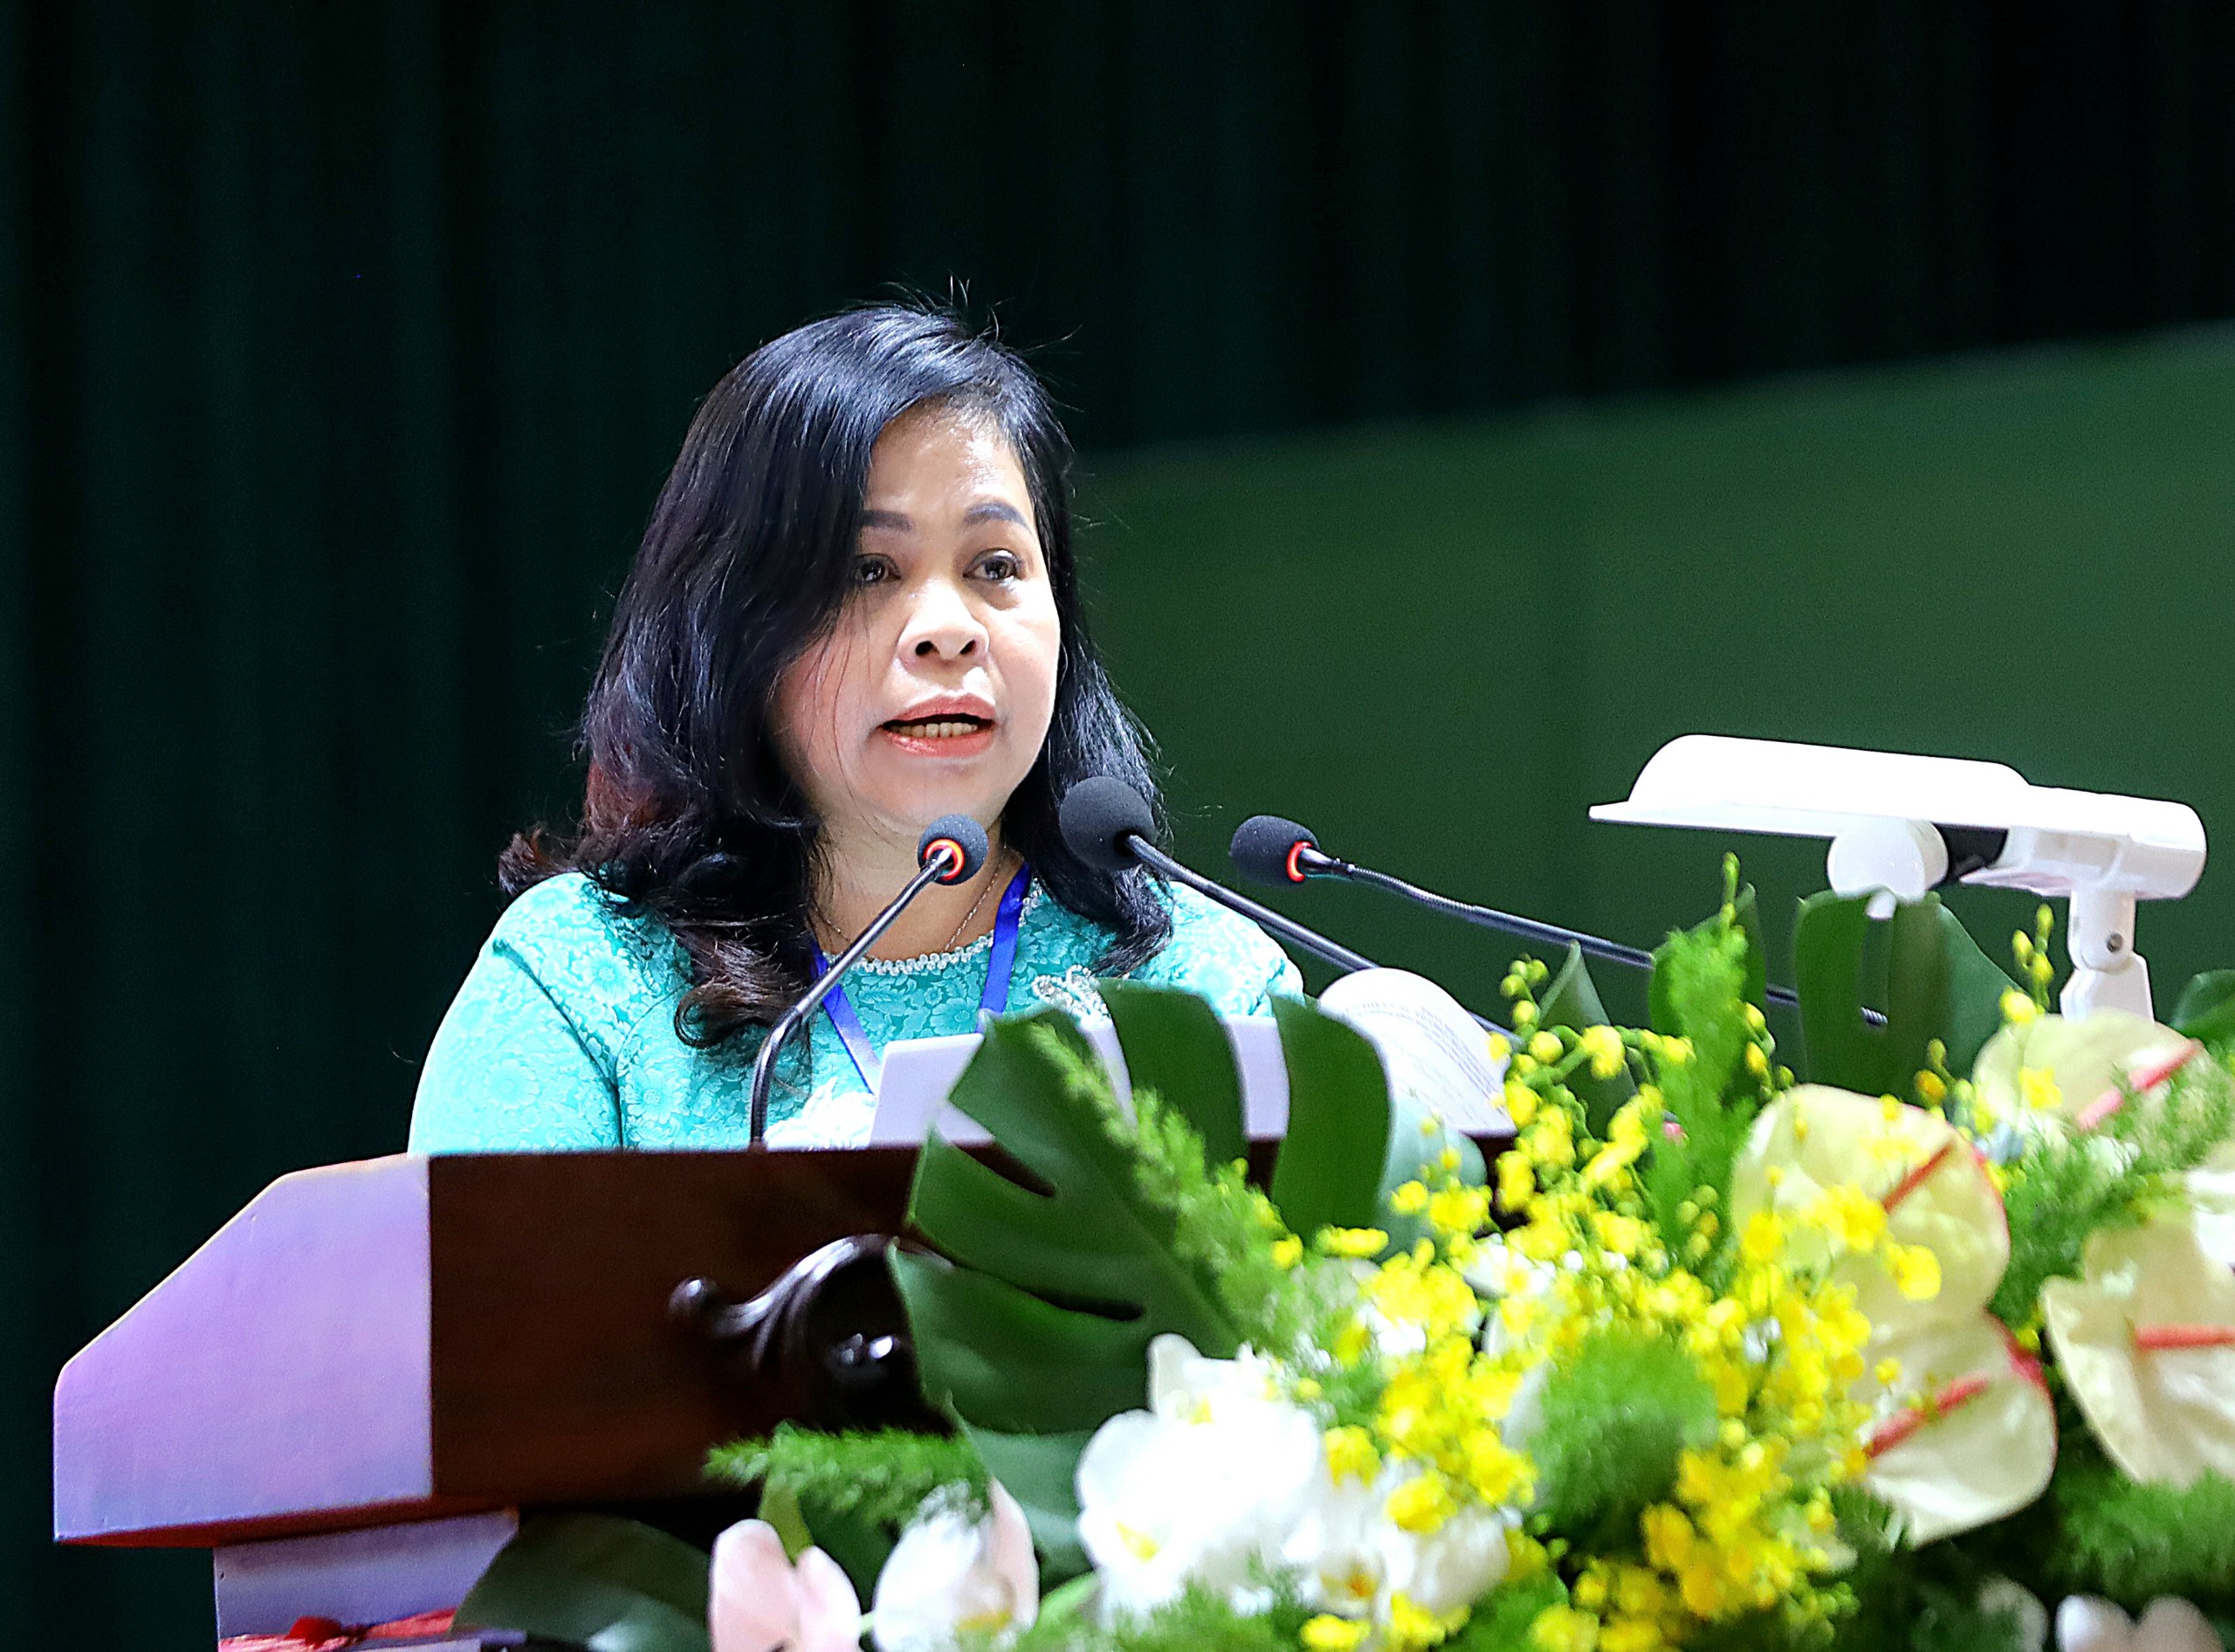 Bà Lê Thị Thanh Giang - Chủ tịch Liên hiệp các tổ chức hữu nghị TP. Cần Thơ trình bày tham luận về phối hợp giữa Liên hiệp các tổ chức hữu nghị thành phố với Ủy ban MTTQ Việt Nam thành phố về công tác đối ngoại nhân dân.